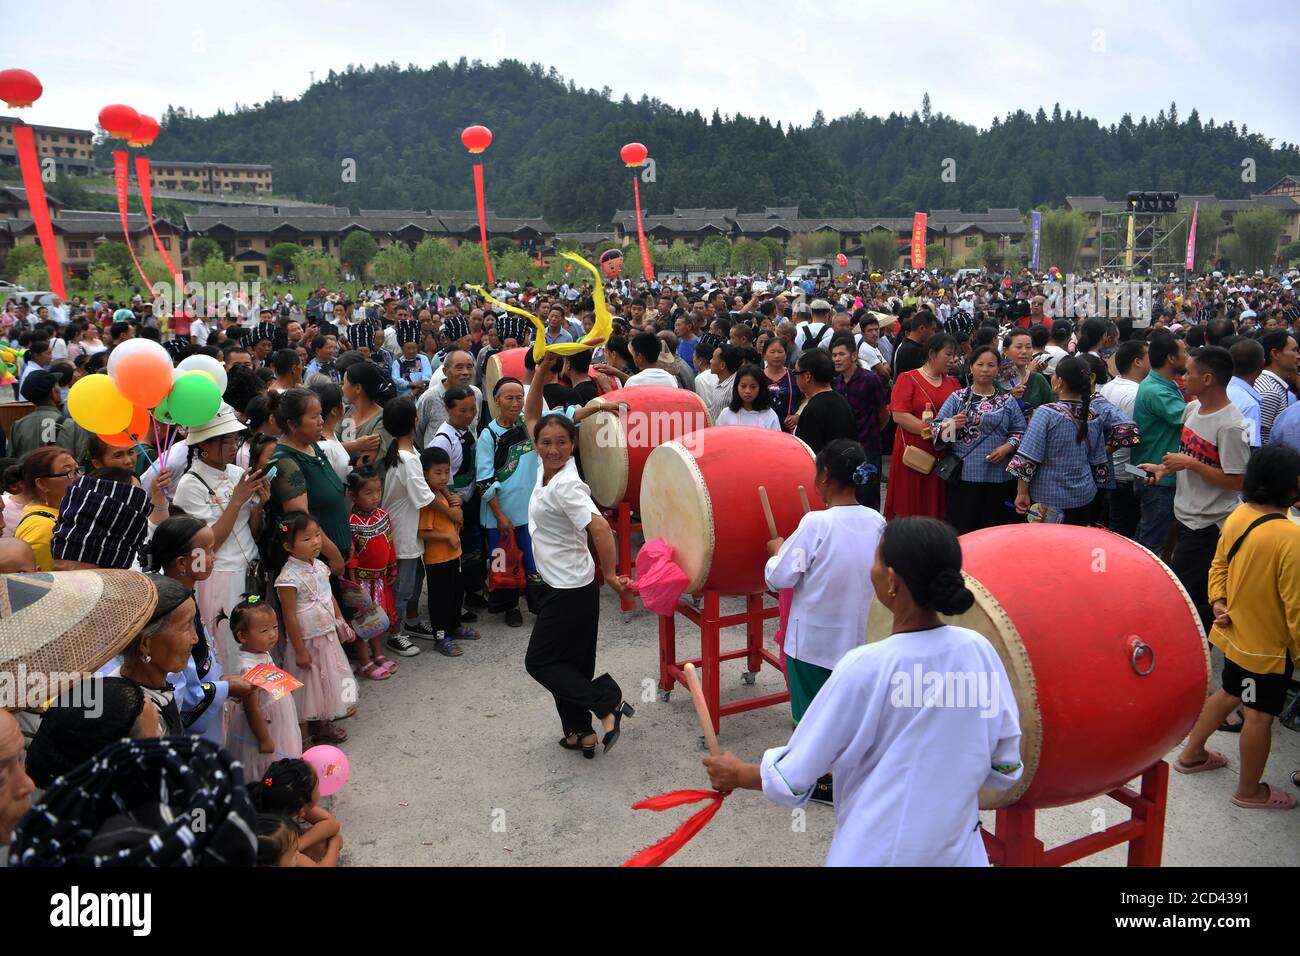 Les gens participent à la compétition de drum au Festival de la chanson folklorique double six qui a eu lieu dans le comté autonome de Chengbu Miao, dans la province de Hunan, au centre de la Chine, le 26 juillet Banque D'Images